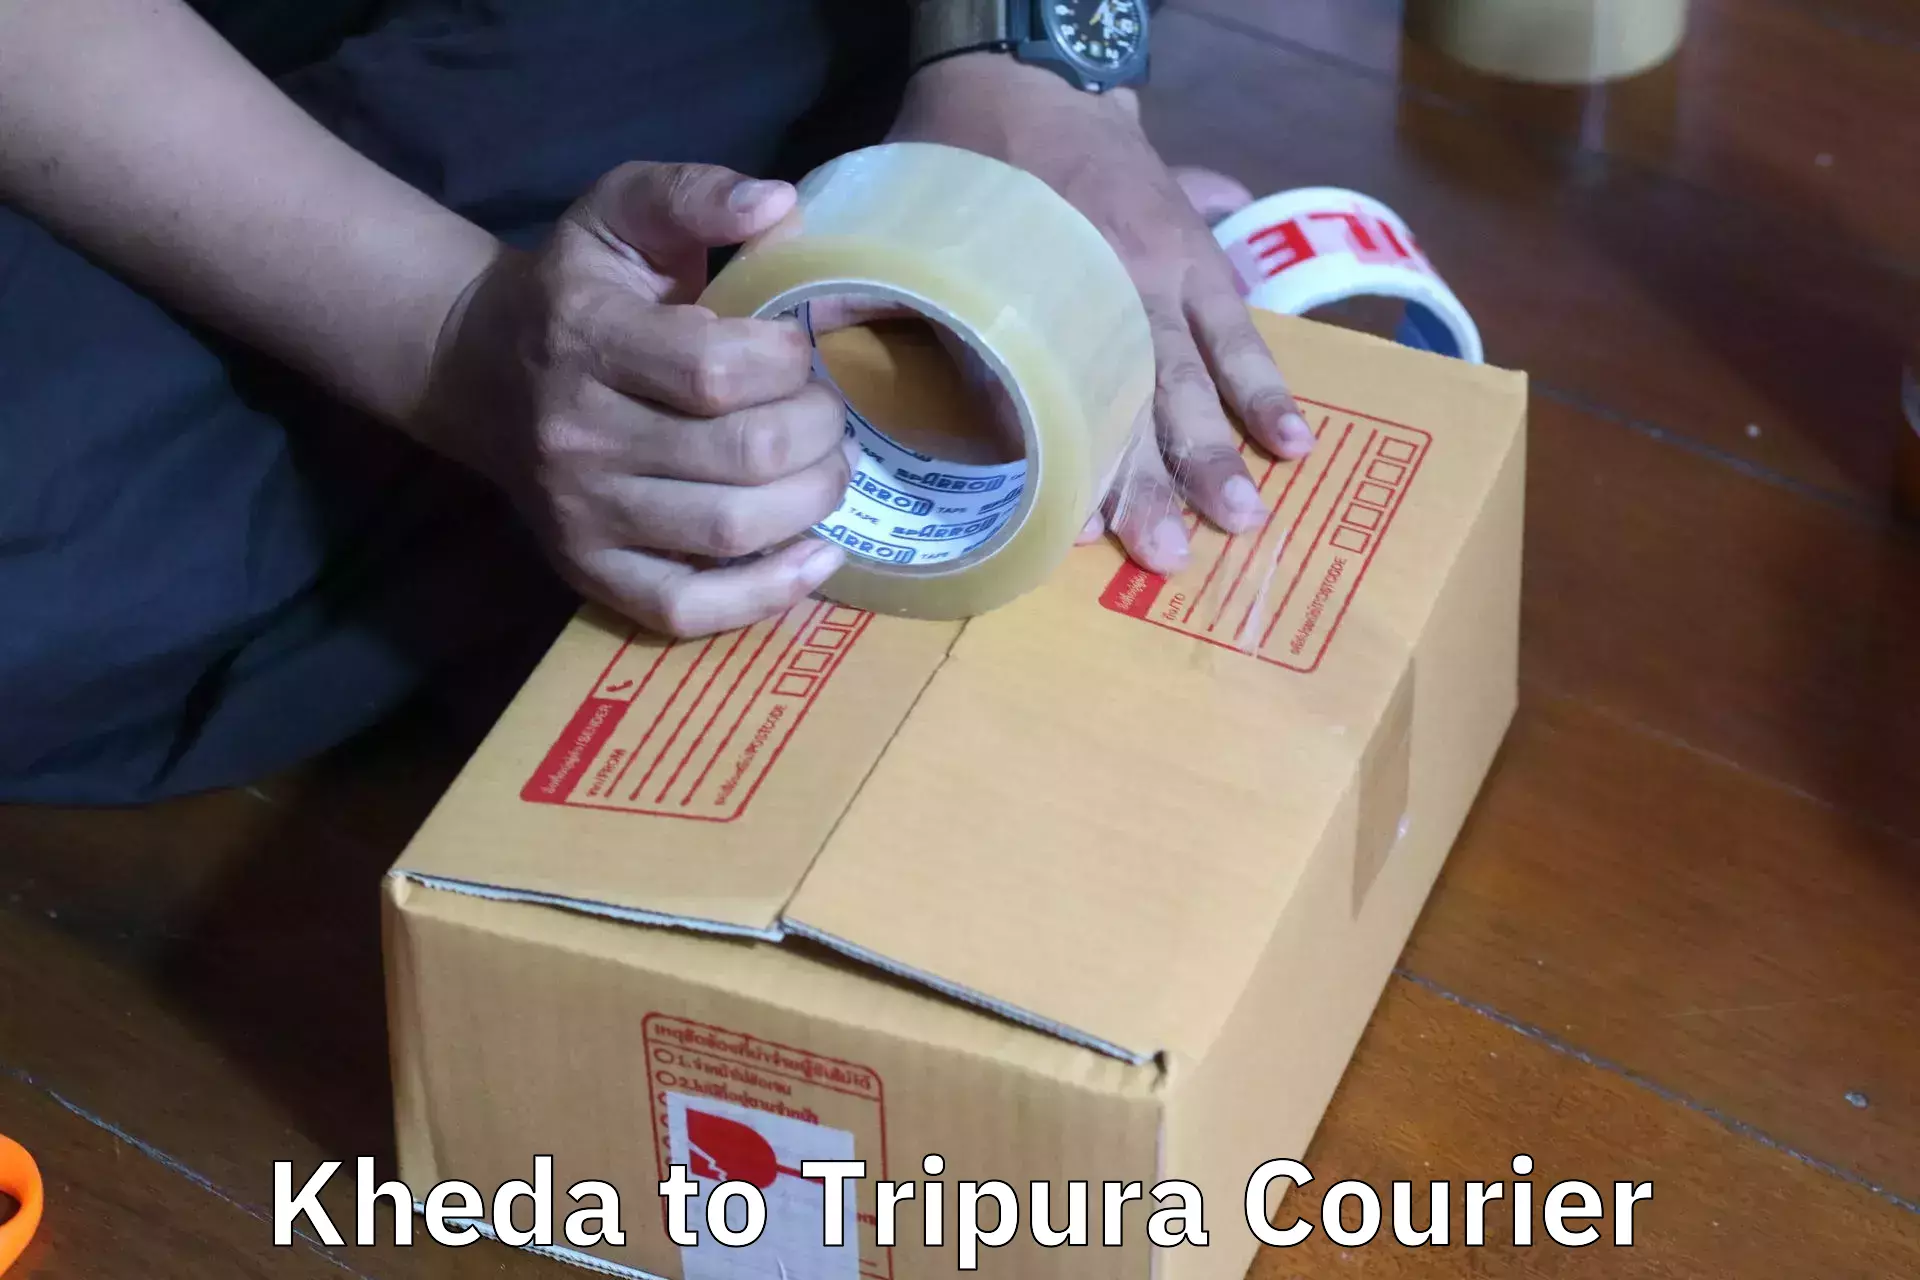 Furniture transport experts Kheda to Bishalgarh